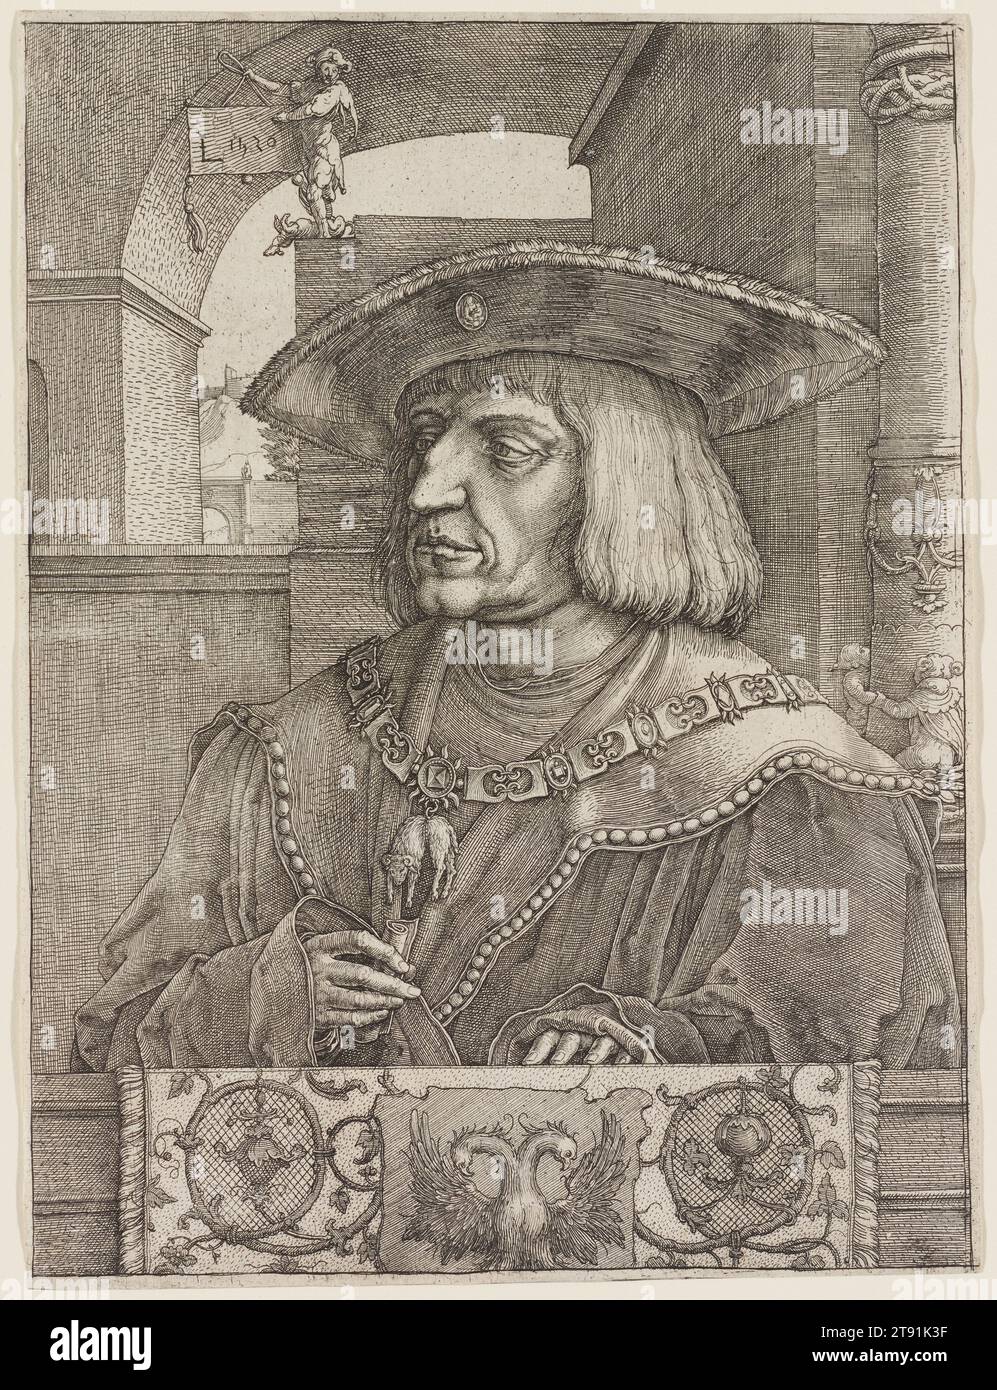 Kaiser Maximilian I, 1520, Lucas Huygensz van Leyden, Niederländisch, um 1490 - 1533, 10 1/4 x 7 5/8 Zoll (26,04 x 19,37 cm) (Bild, in Plattenark geschnitten), Gravur und Ätzen, Niederlande, 16. Jahrhundert, Lucas van Leyden schuf dieses Porträt zum Gedenken an Kaiser Maximilians Tod im Jahr 1519. Um diesen Druck im ganzen Heiligen Römischen Reich auf den Markt zu bringen, während die Nachricht vom Tod des Kaisers noch frisch war, benutzte der Künstler die zweckmäßigere Methode des Ätzens für den Hintergrund, das Kostüm, und Hände, aber die raffiniertere Technik der Gravur vorbehalten, um ein genaues Bild von Maximilians Gesicht zu machen Stockfoto